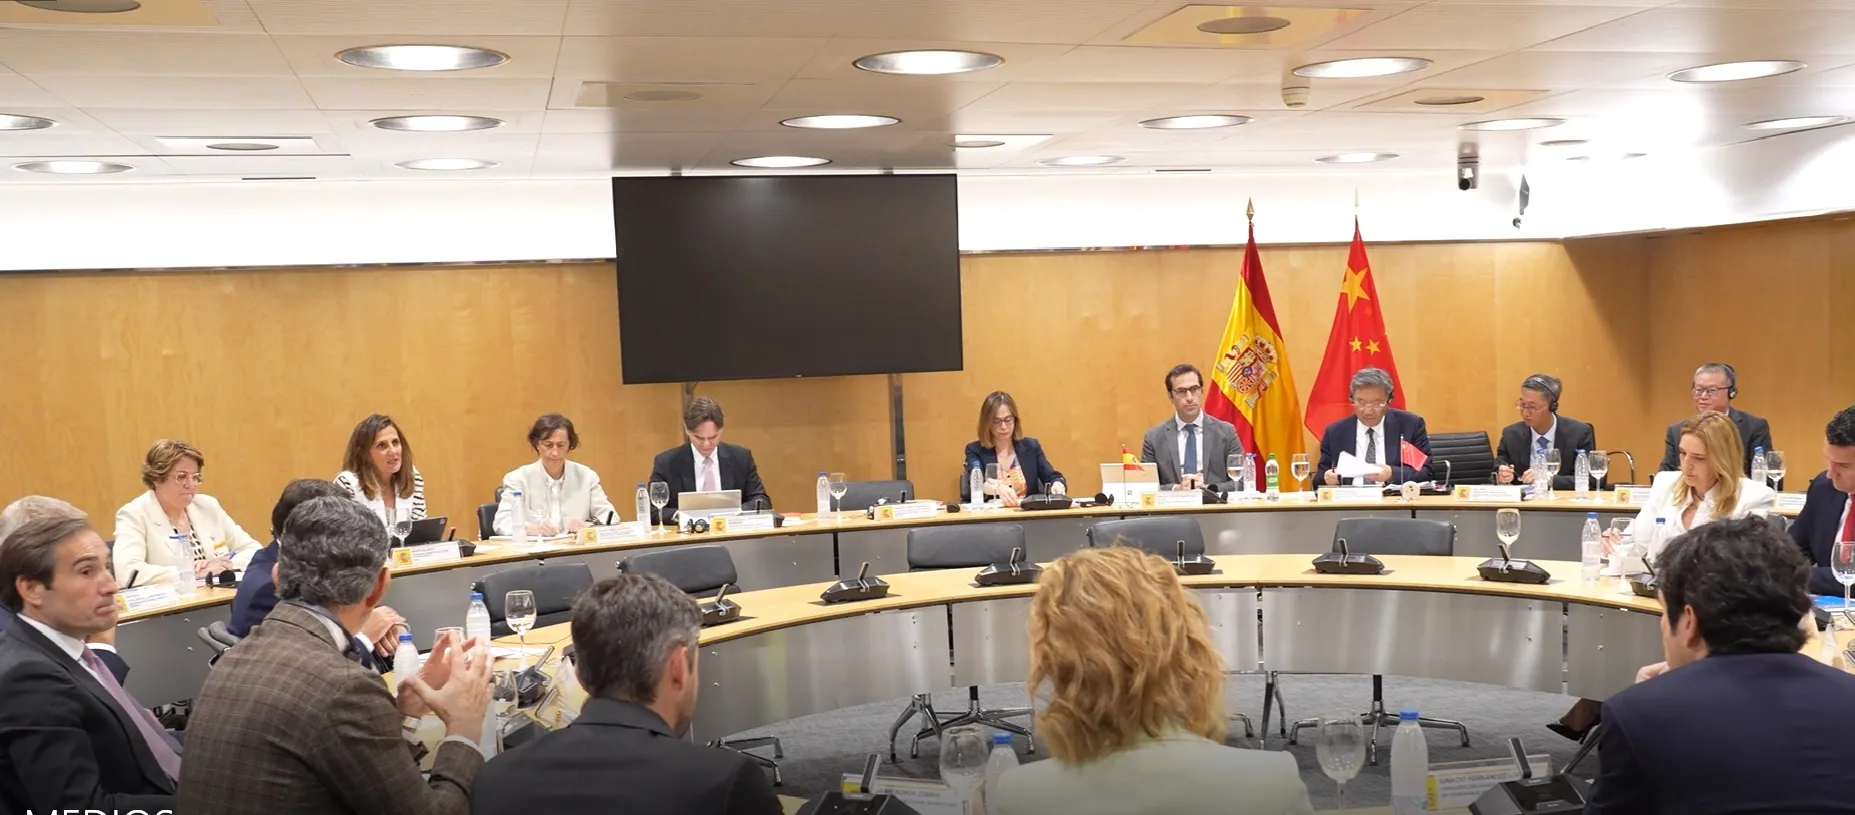 La directora general de Cámara de España participa en la Comisión Mixta Económica e Industrial Hispano-China